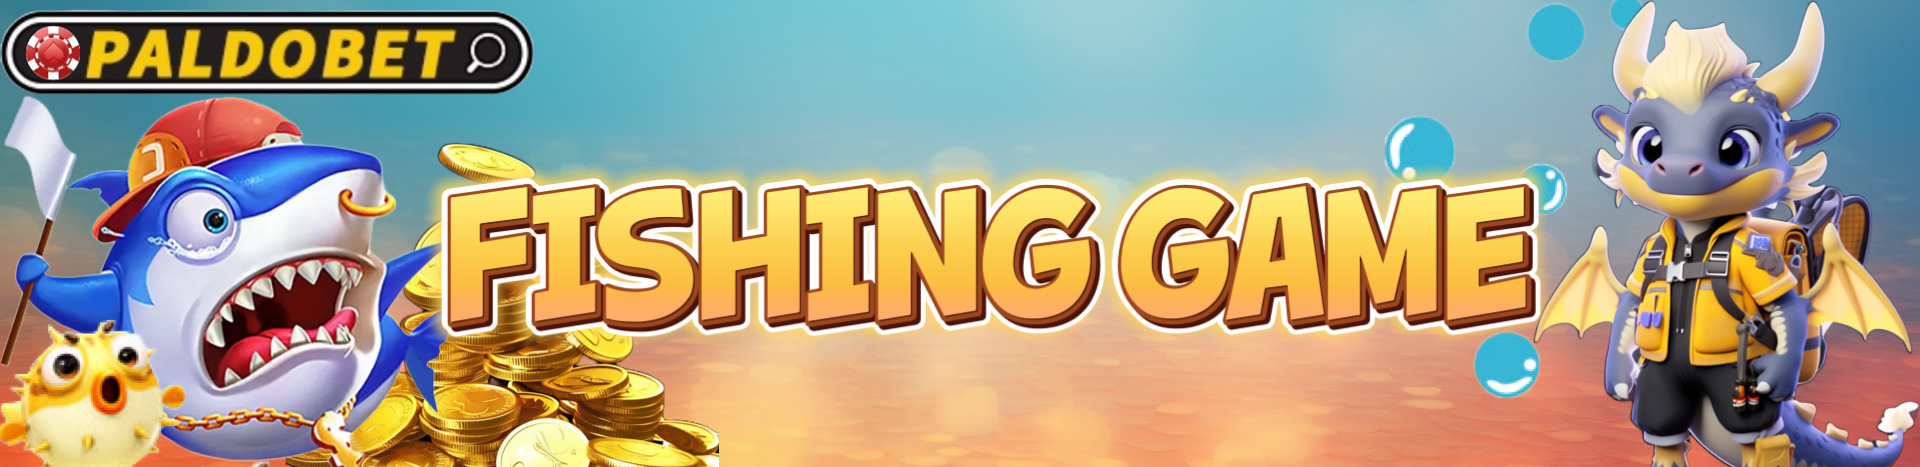 paldobet_fishing-games_banner